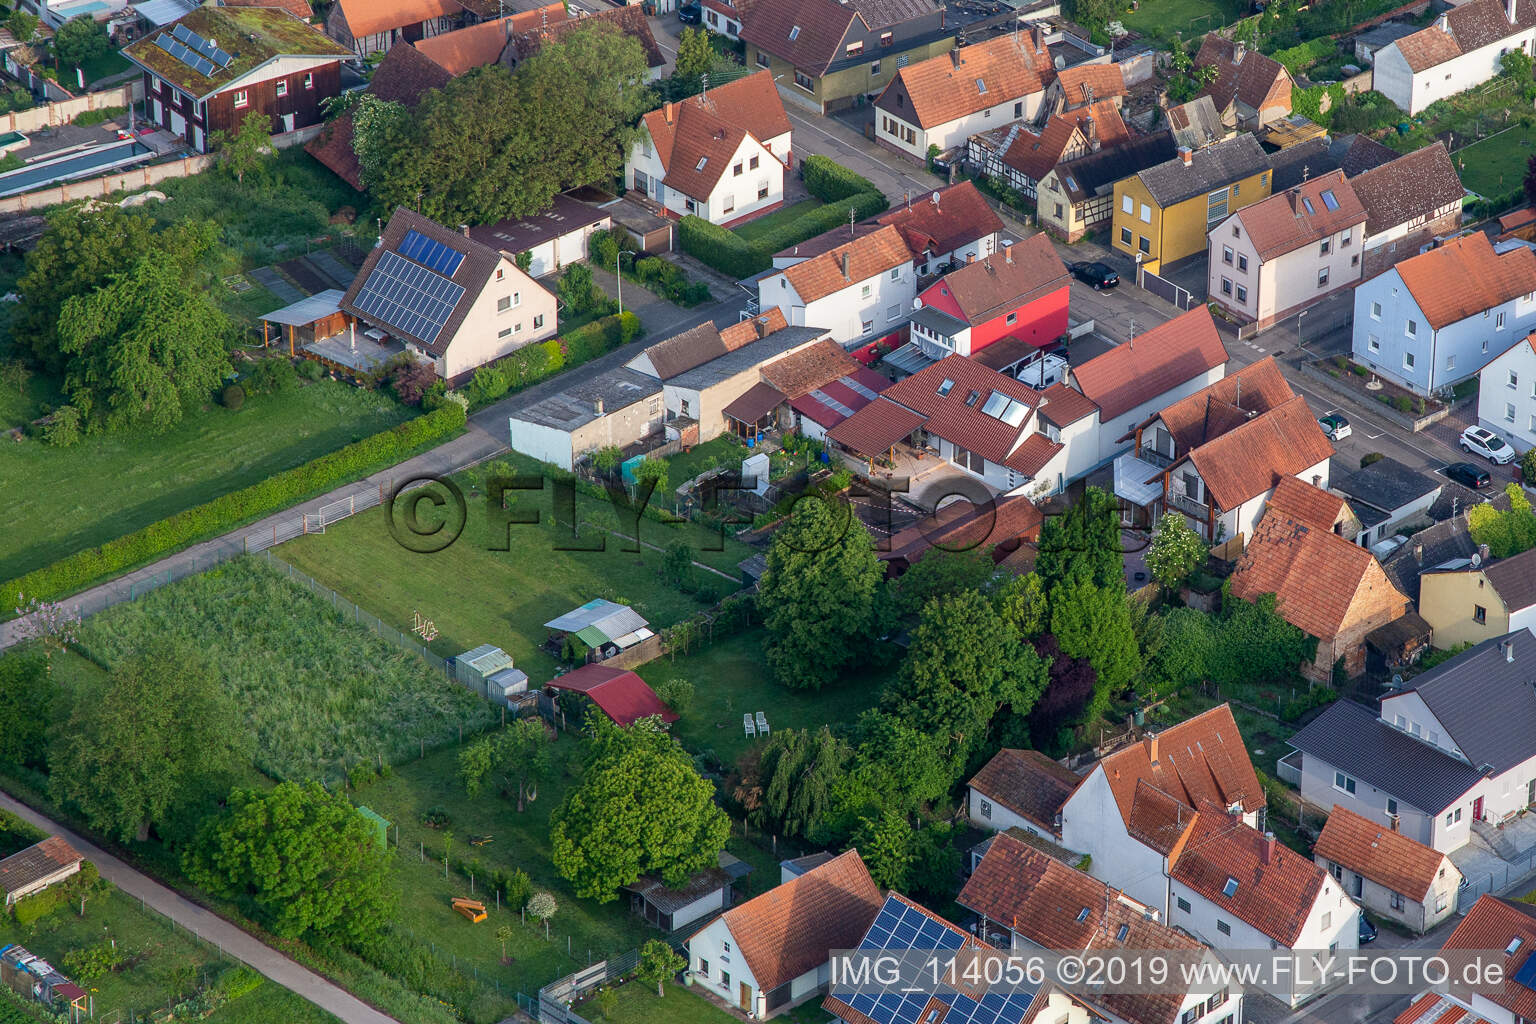 Freckenfeld im Bundesland Rheinland-Pfalz, Deutschland aus der Luft betrachtet